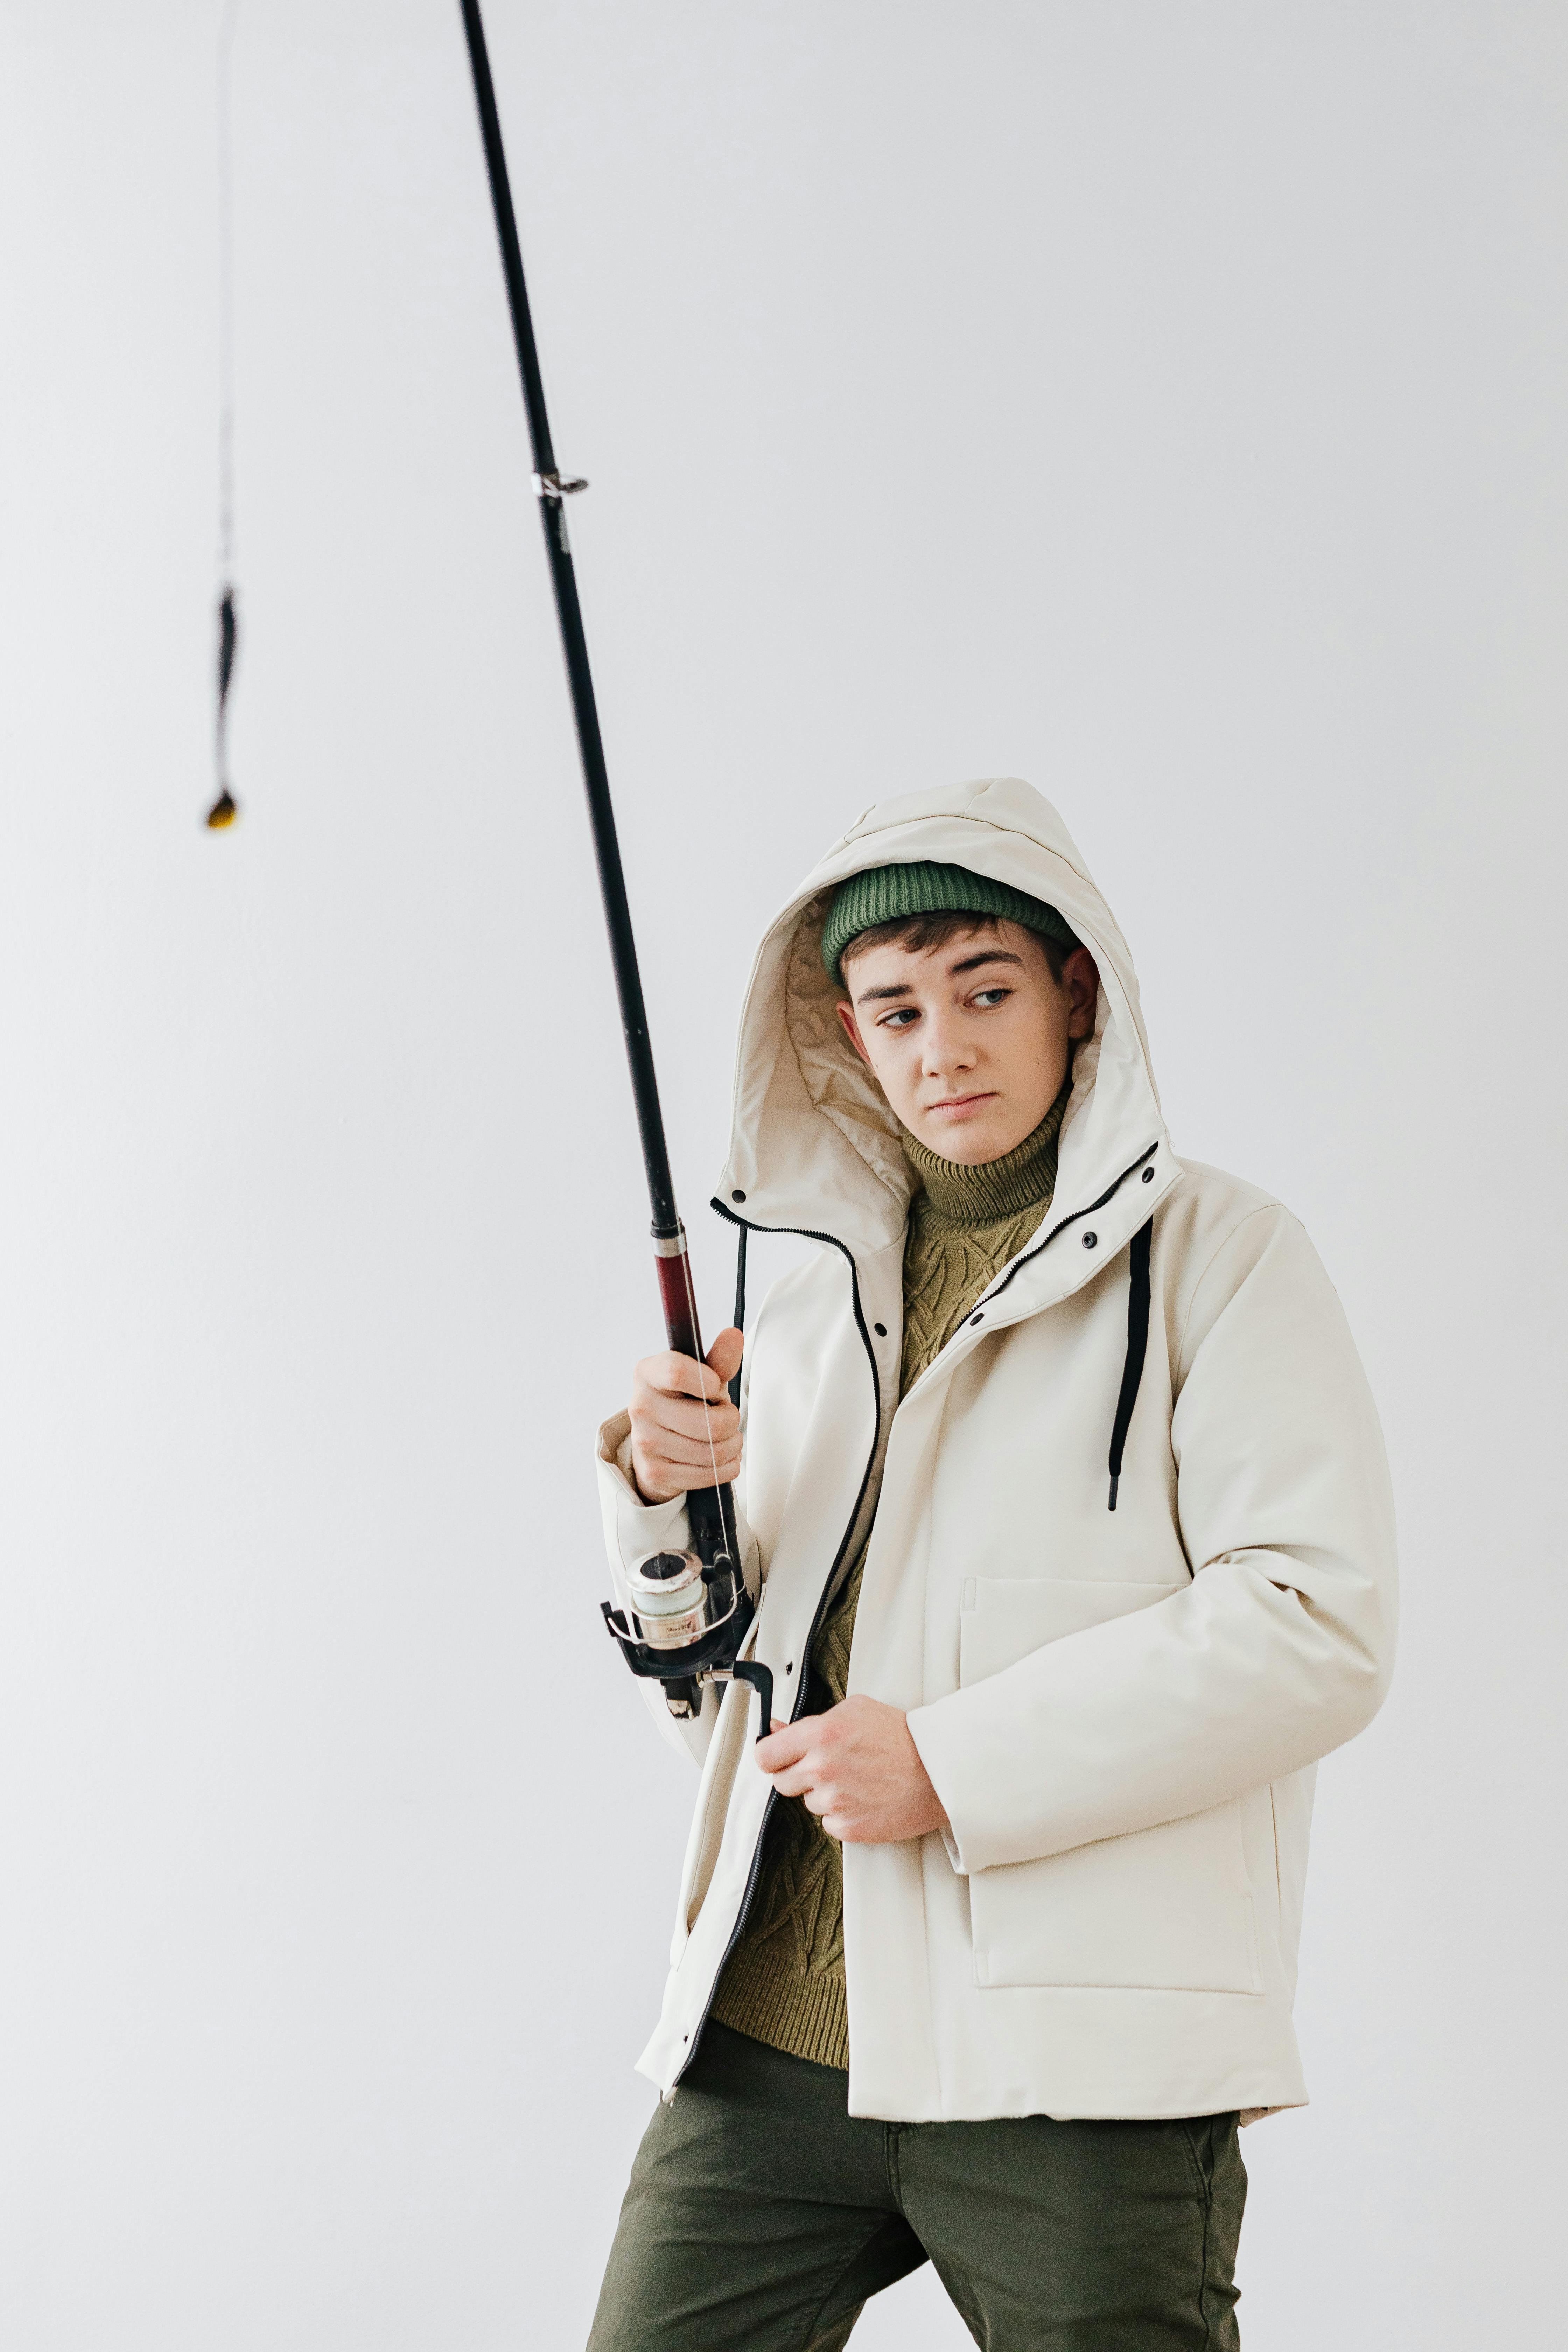 Boy Holding Fishing Rod · Free Stock Photo